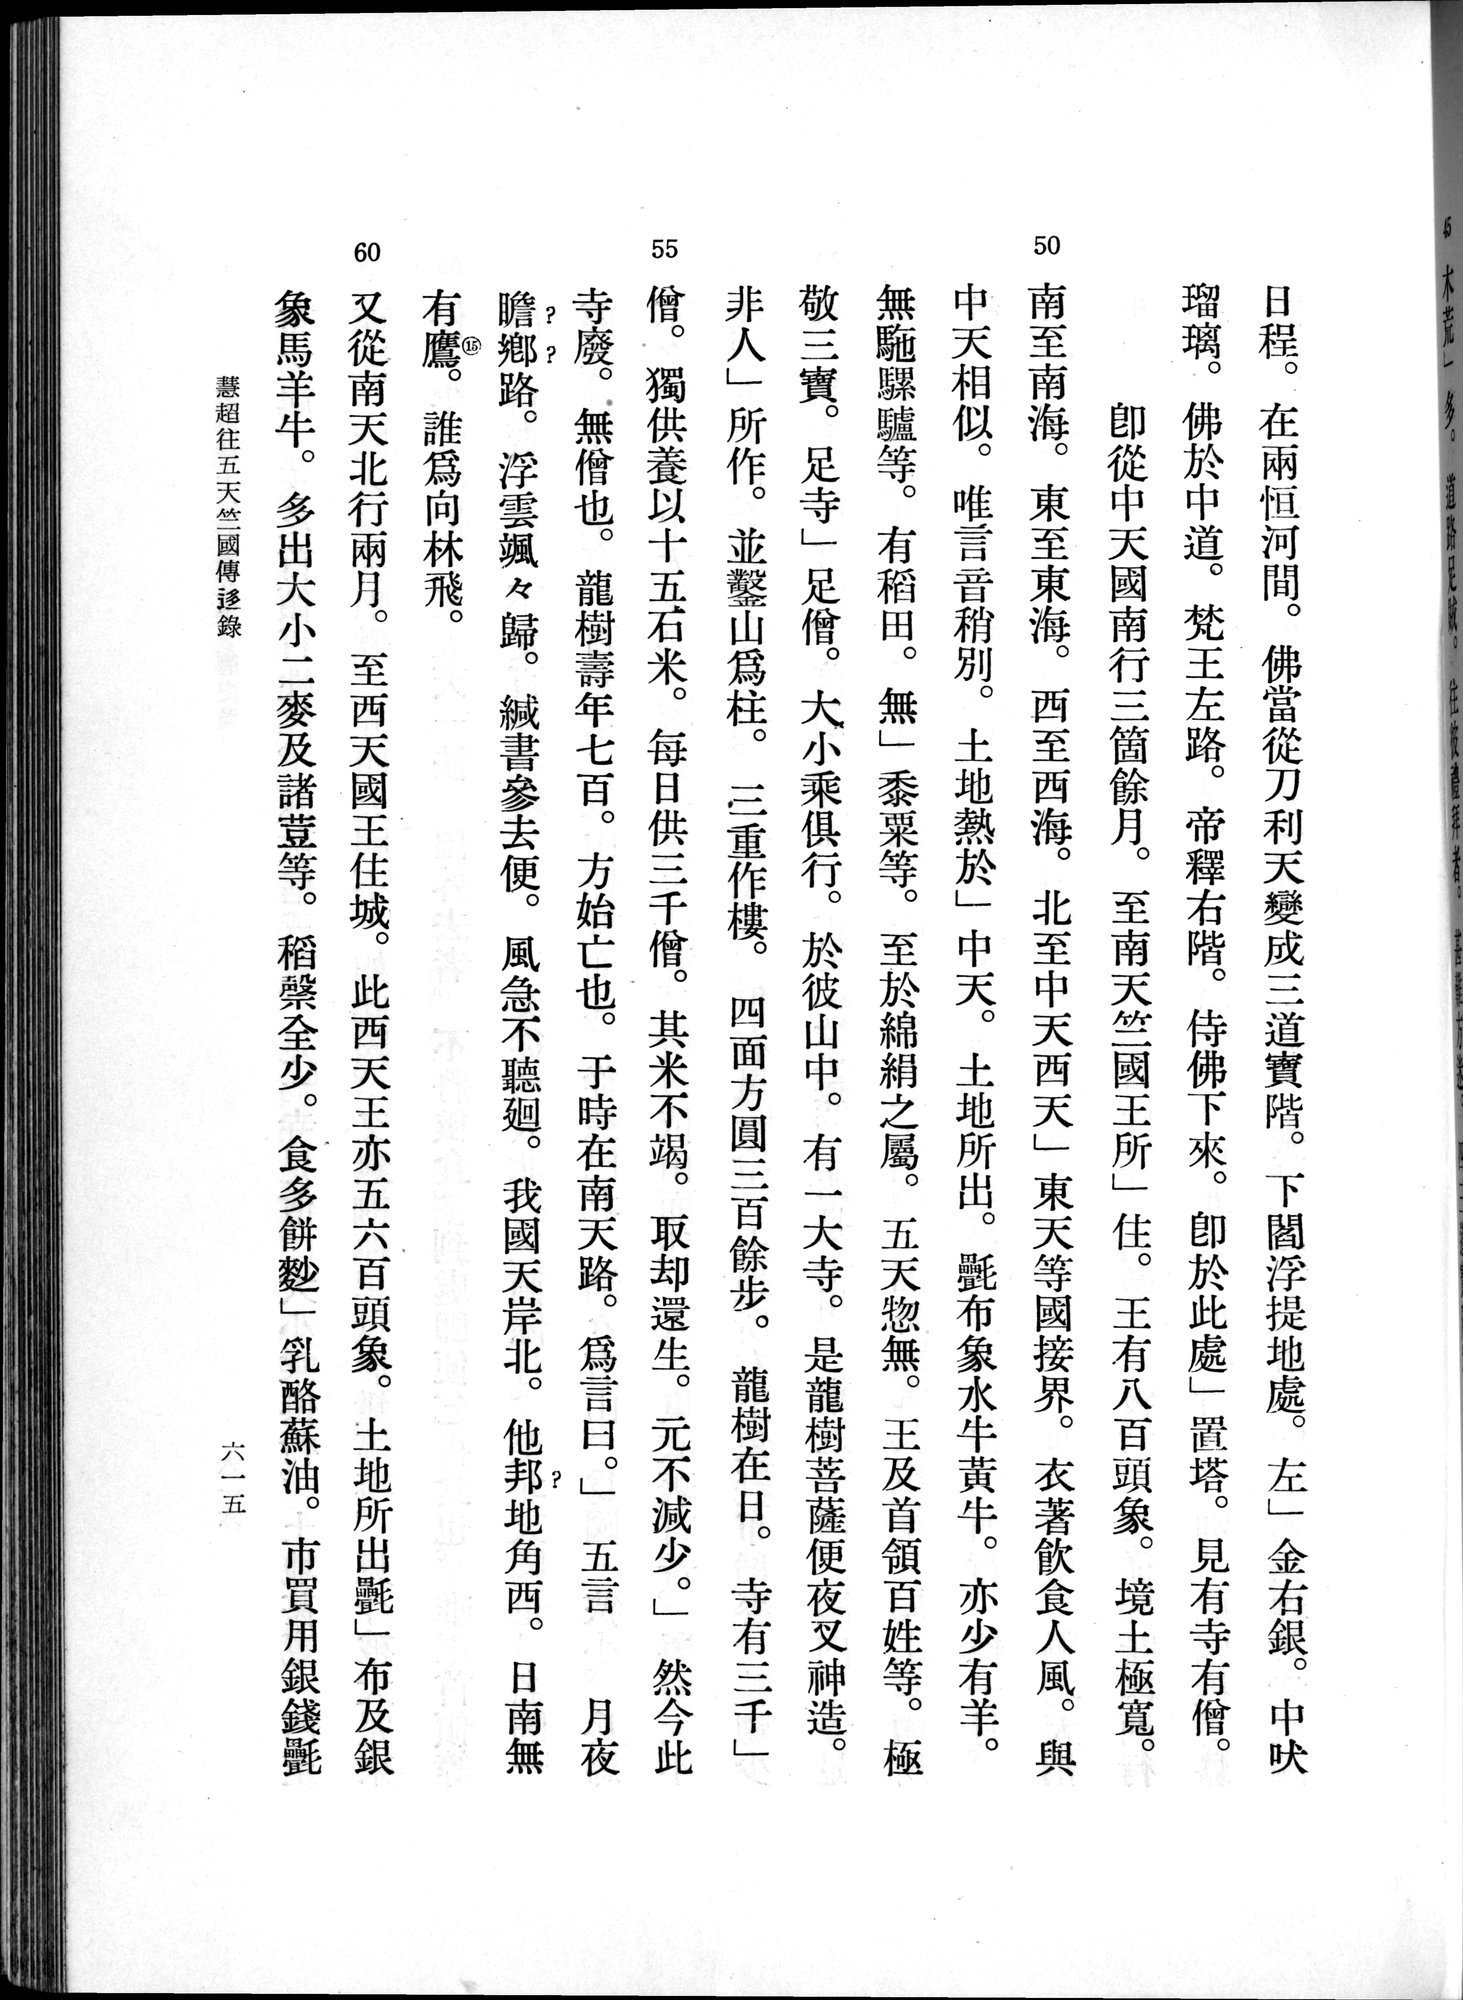 羽田博士史学論文集 : vol.1 / 653 ページ（白黒高解像度画像）